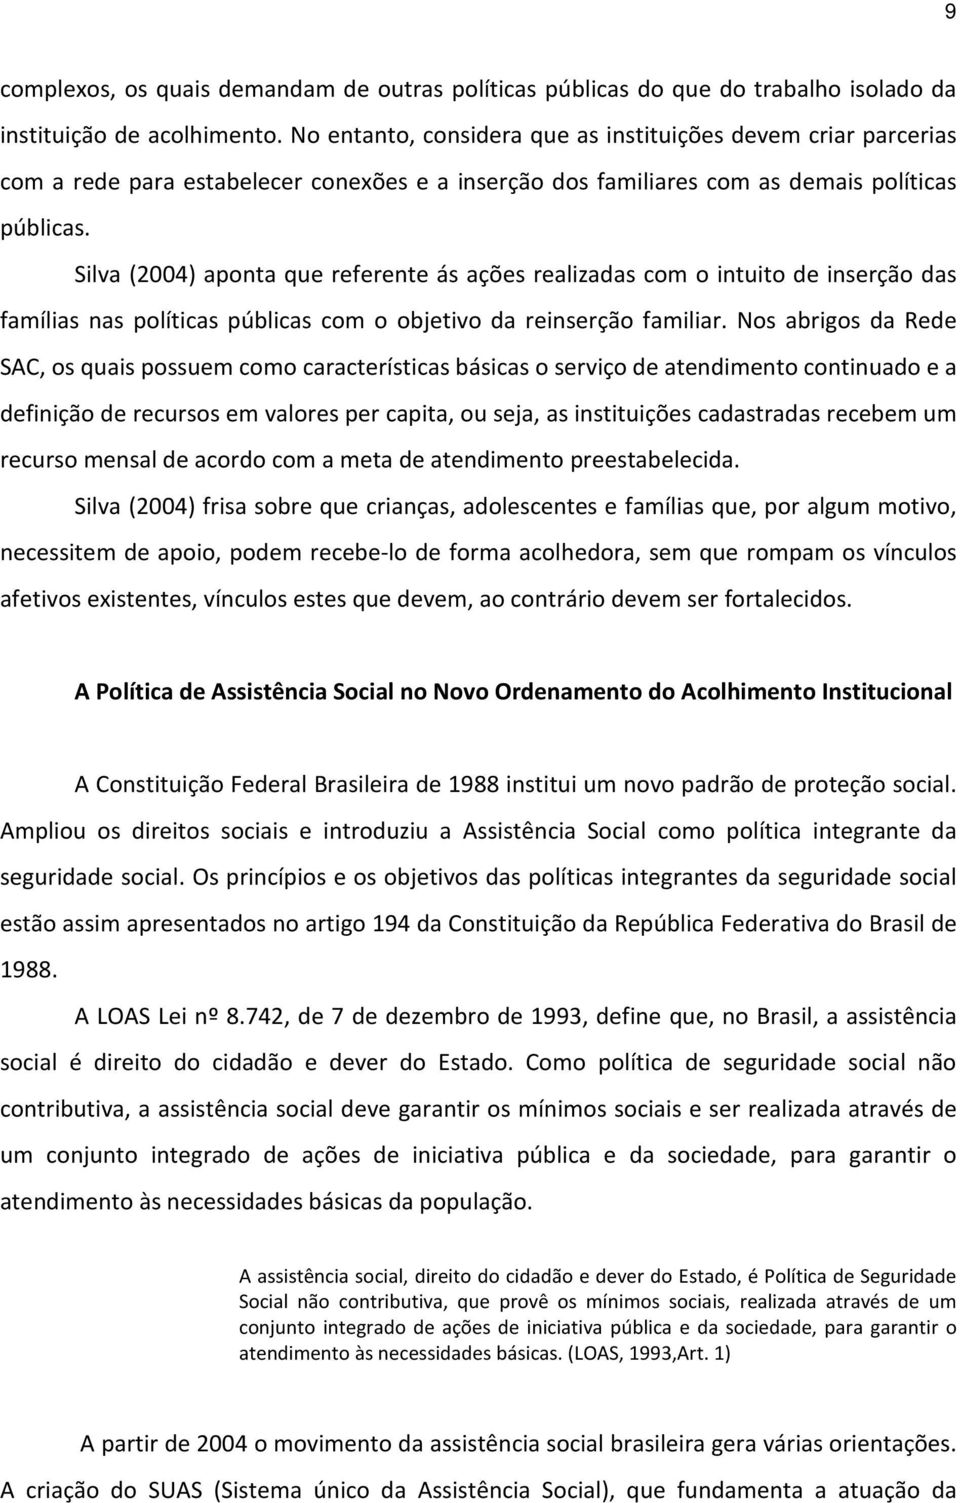 Silva (2004) aponta que referente ás ações realizadas com o intuito de inserção das famílias nas políticas públicas com o objetivo da reinserção familiar.